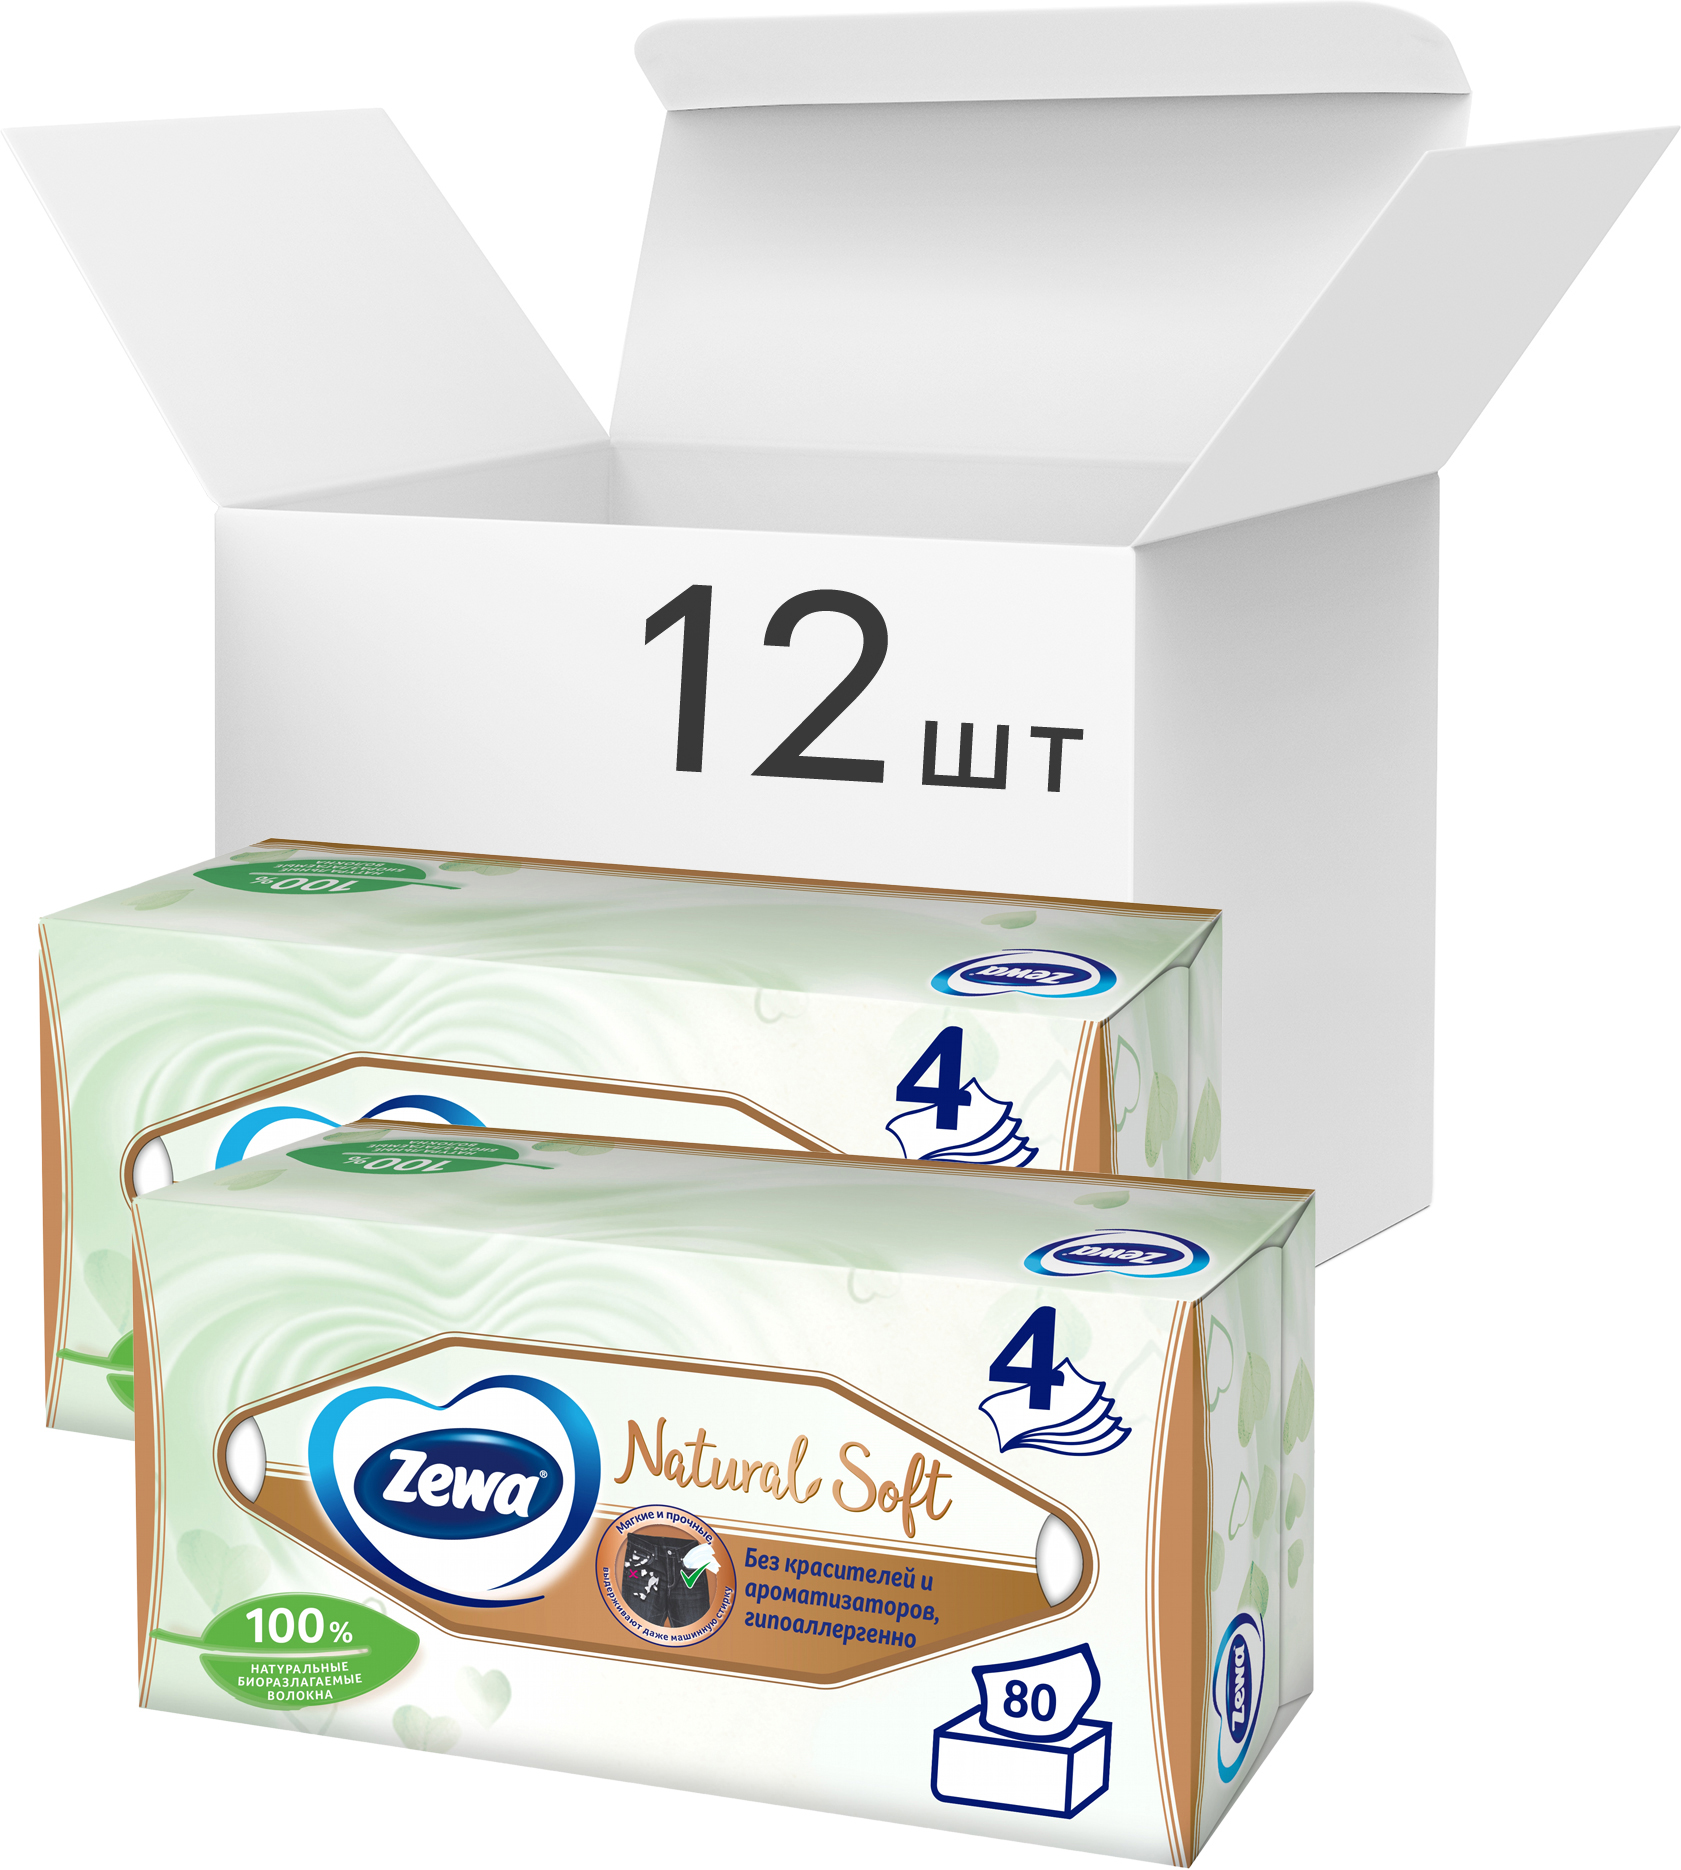 Упаковка салфеток косметических Zewa Natural Soft 4 слоя 12 пачек по 80 шт Бело-кремовых